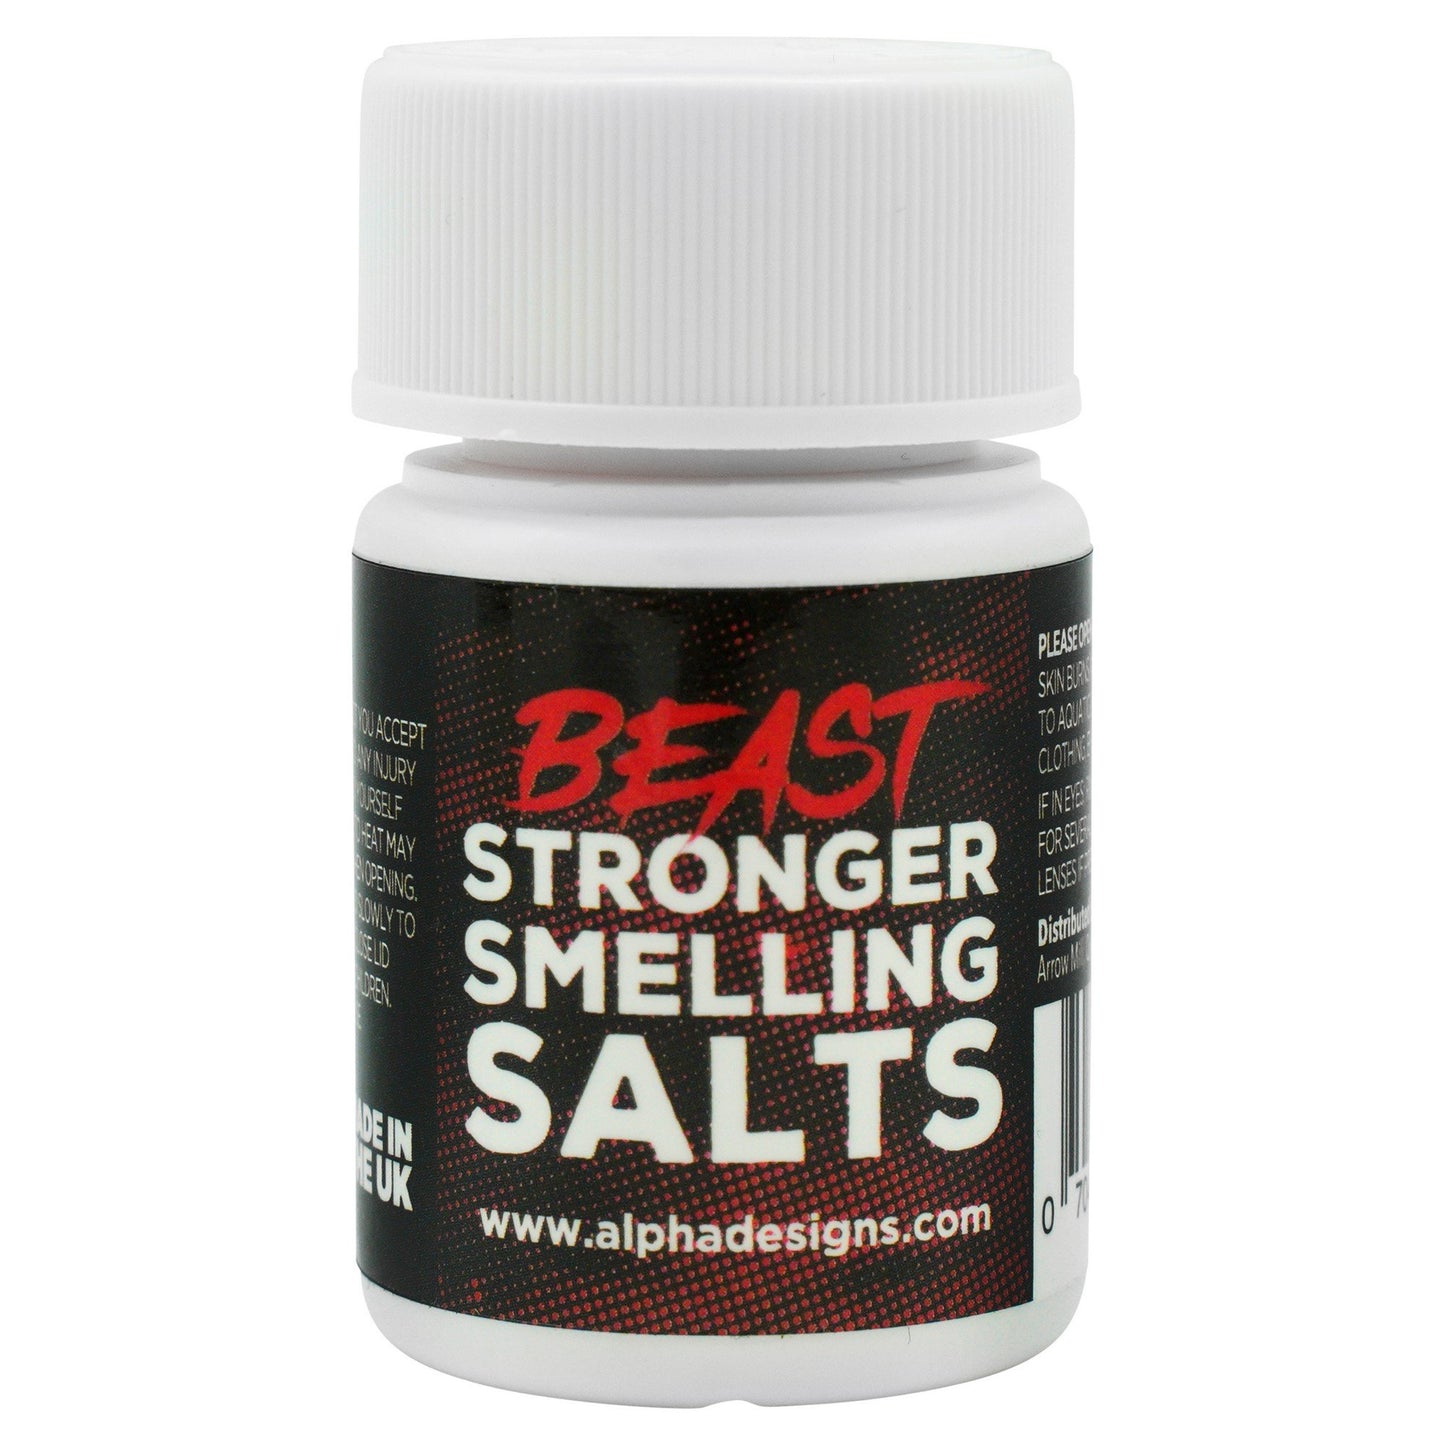 Stronger Smelling Salts